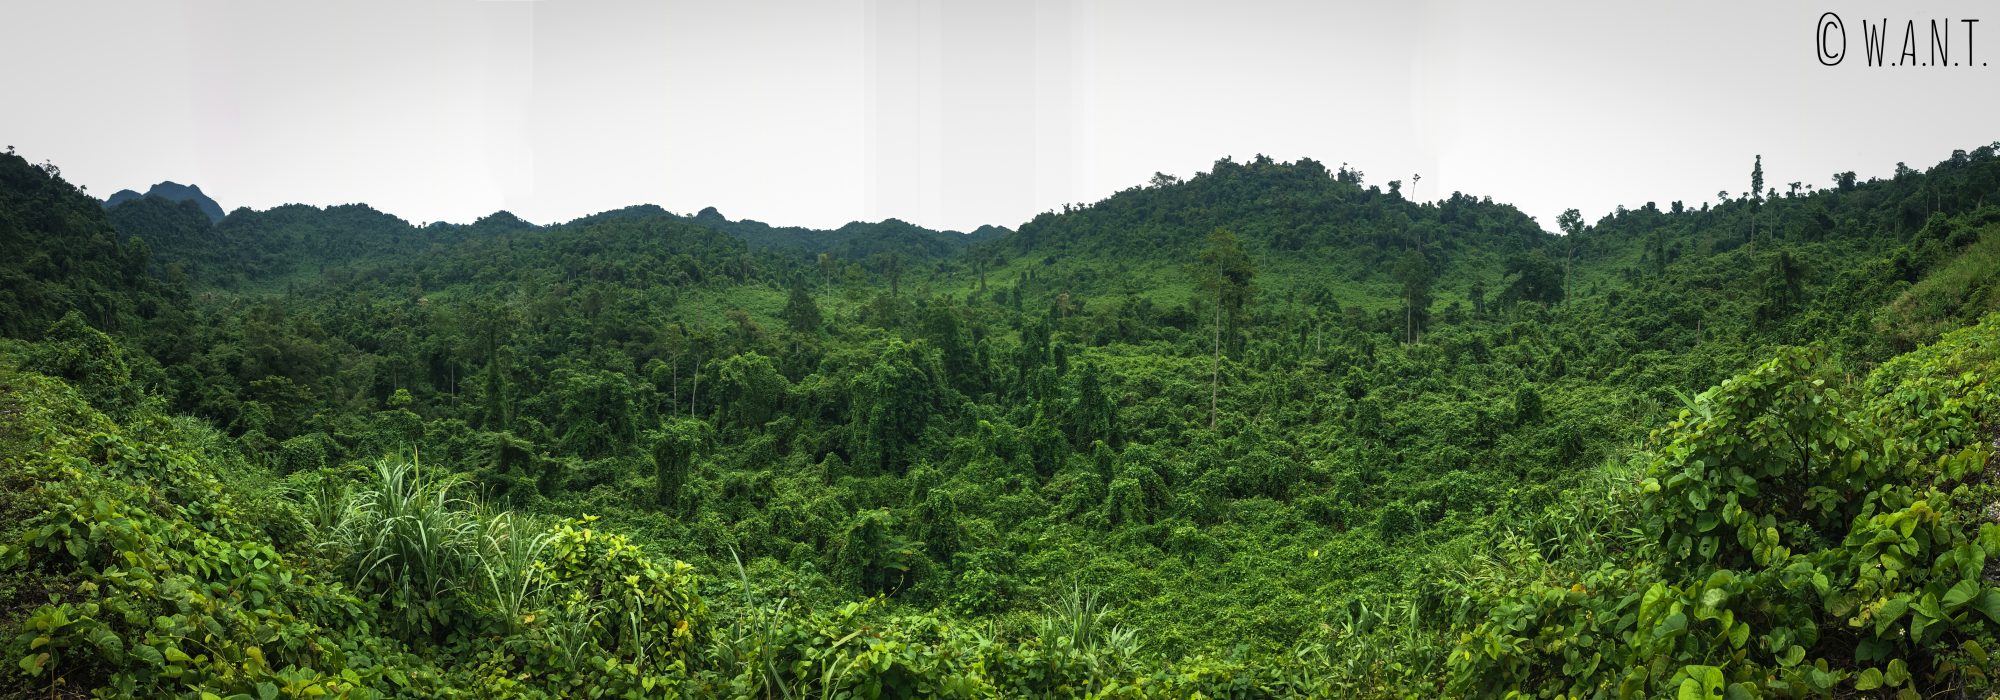 Panorama sur la végétation dense du parc national Phong Nha-Ke Bang